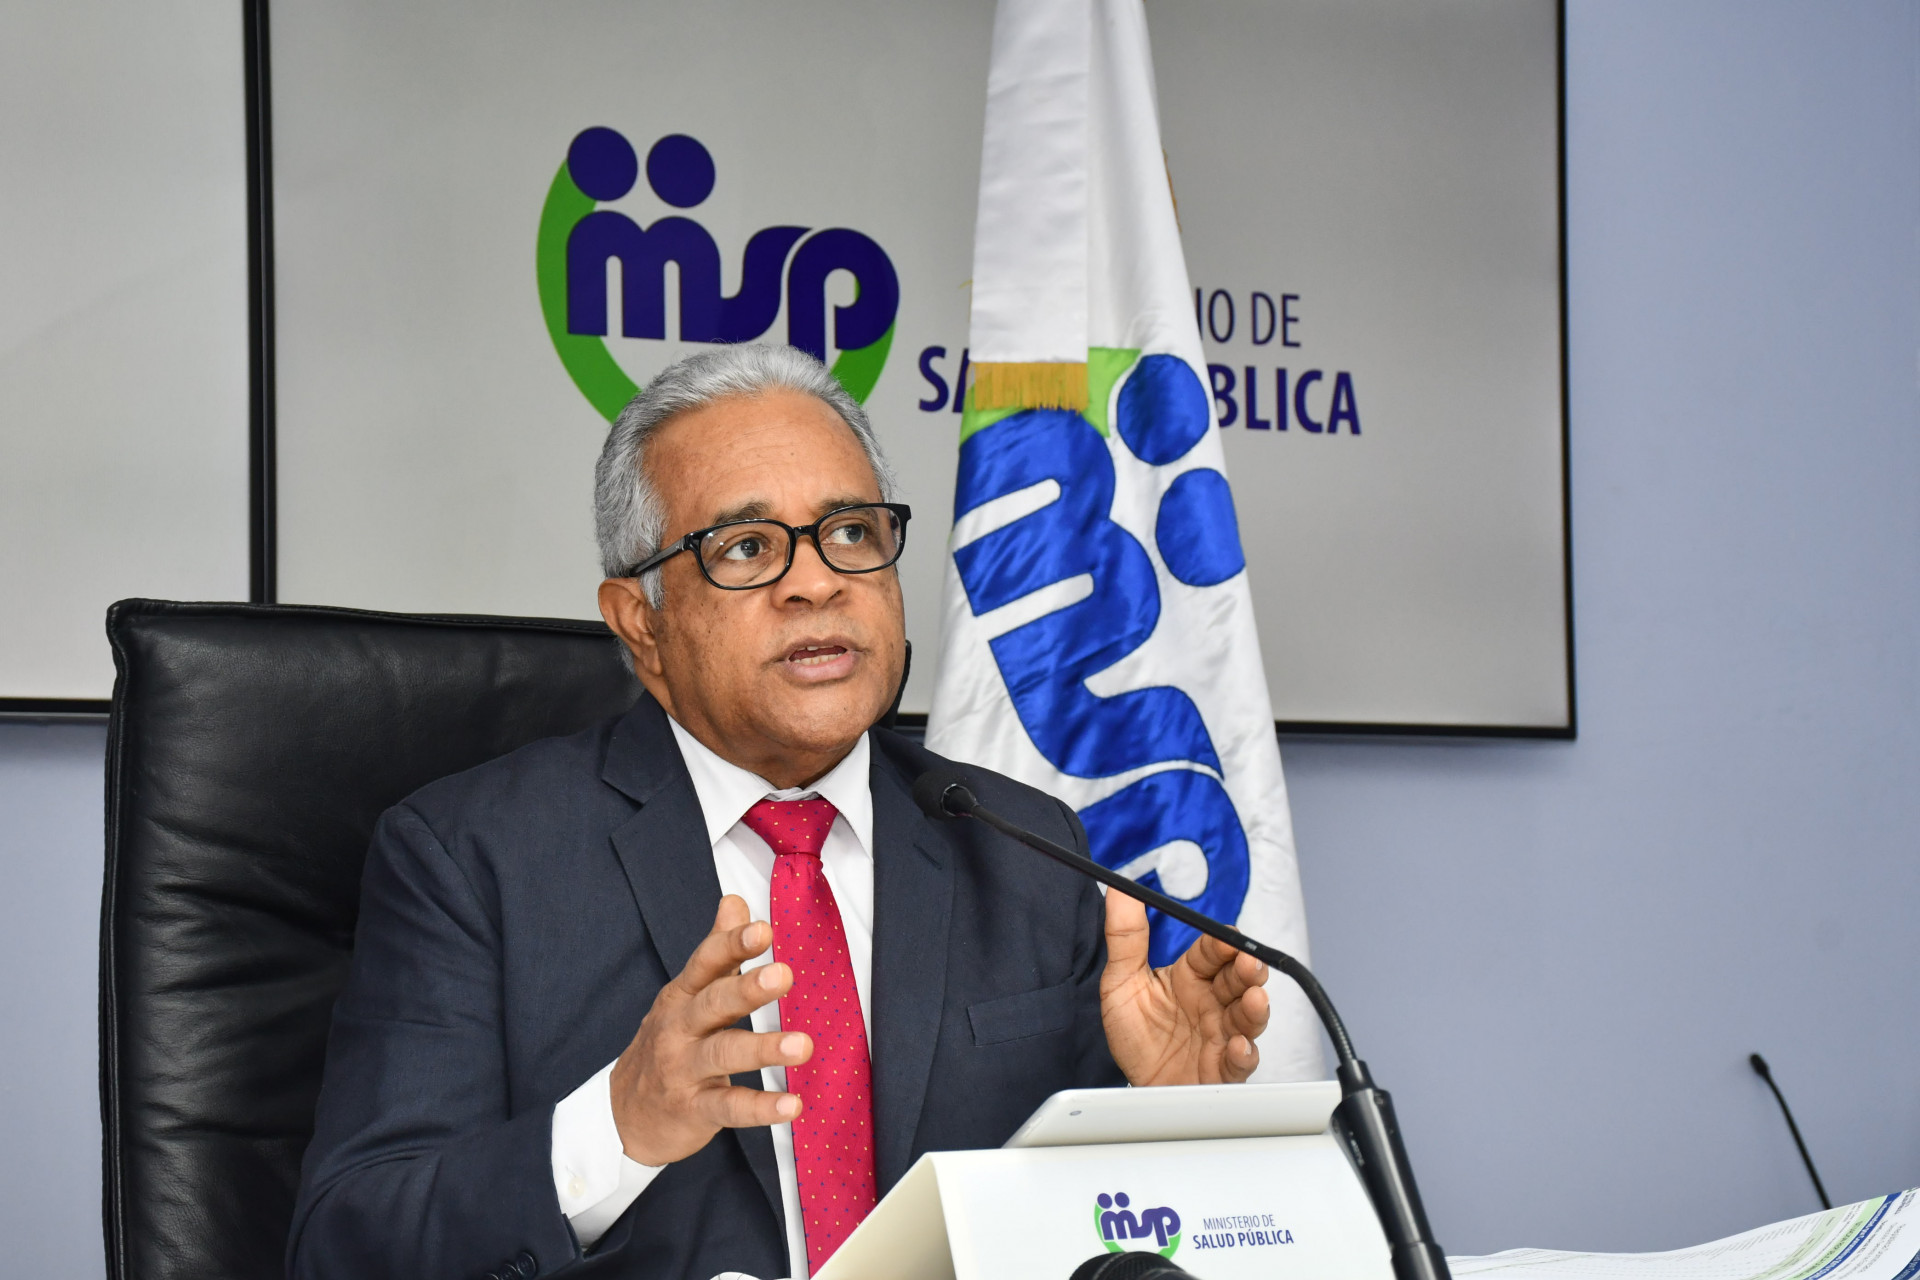 REPÚBLICA DOMINICANA: Ministro de Salud Pública informa intervención para frenar COVID-19 inicia hoy en circunscripciones 2 y 3 del Distrito Nacional